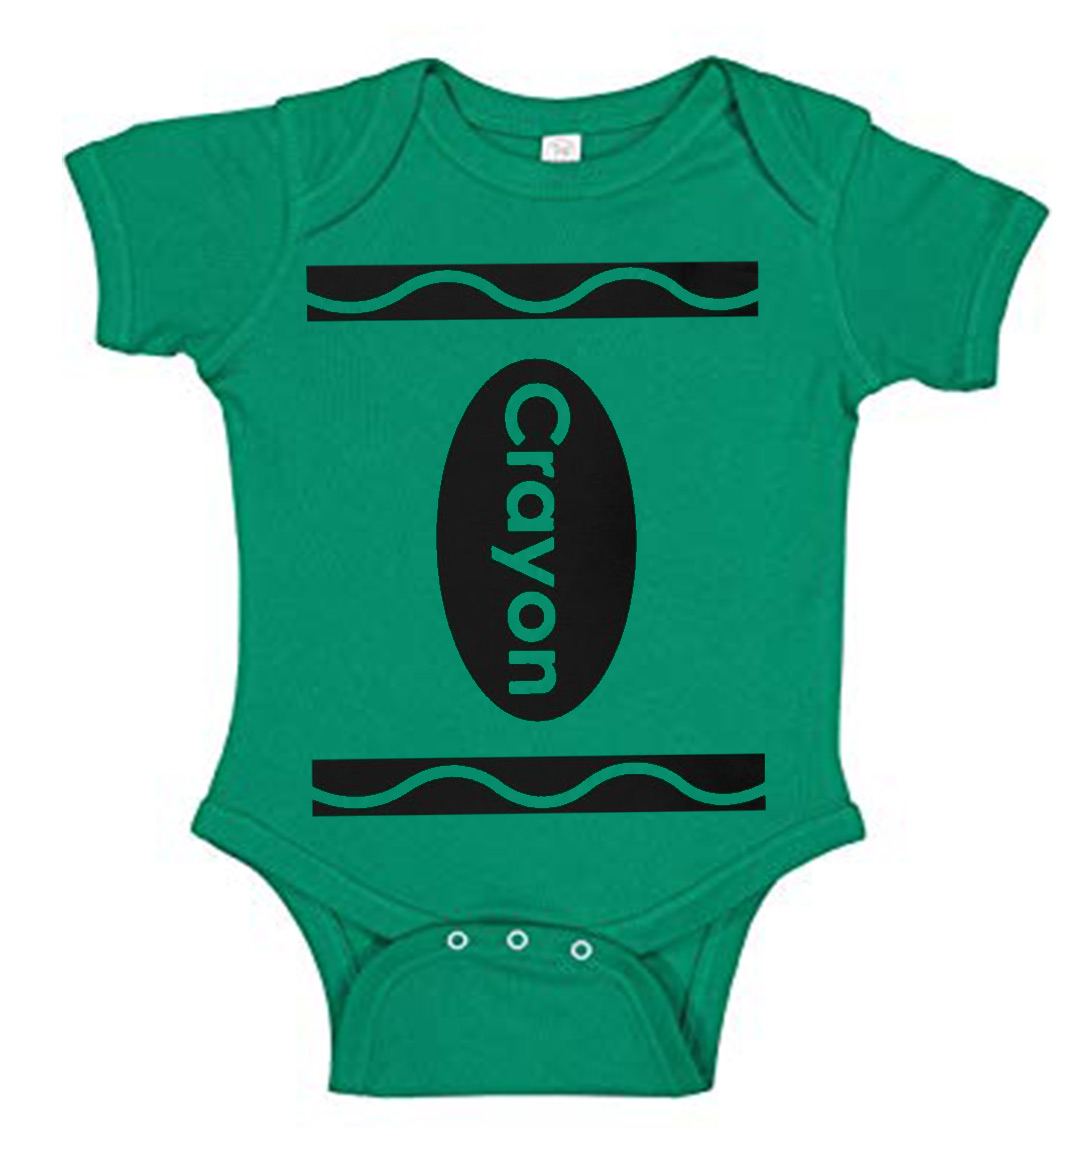 Toddler Crayon Shirt Green